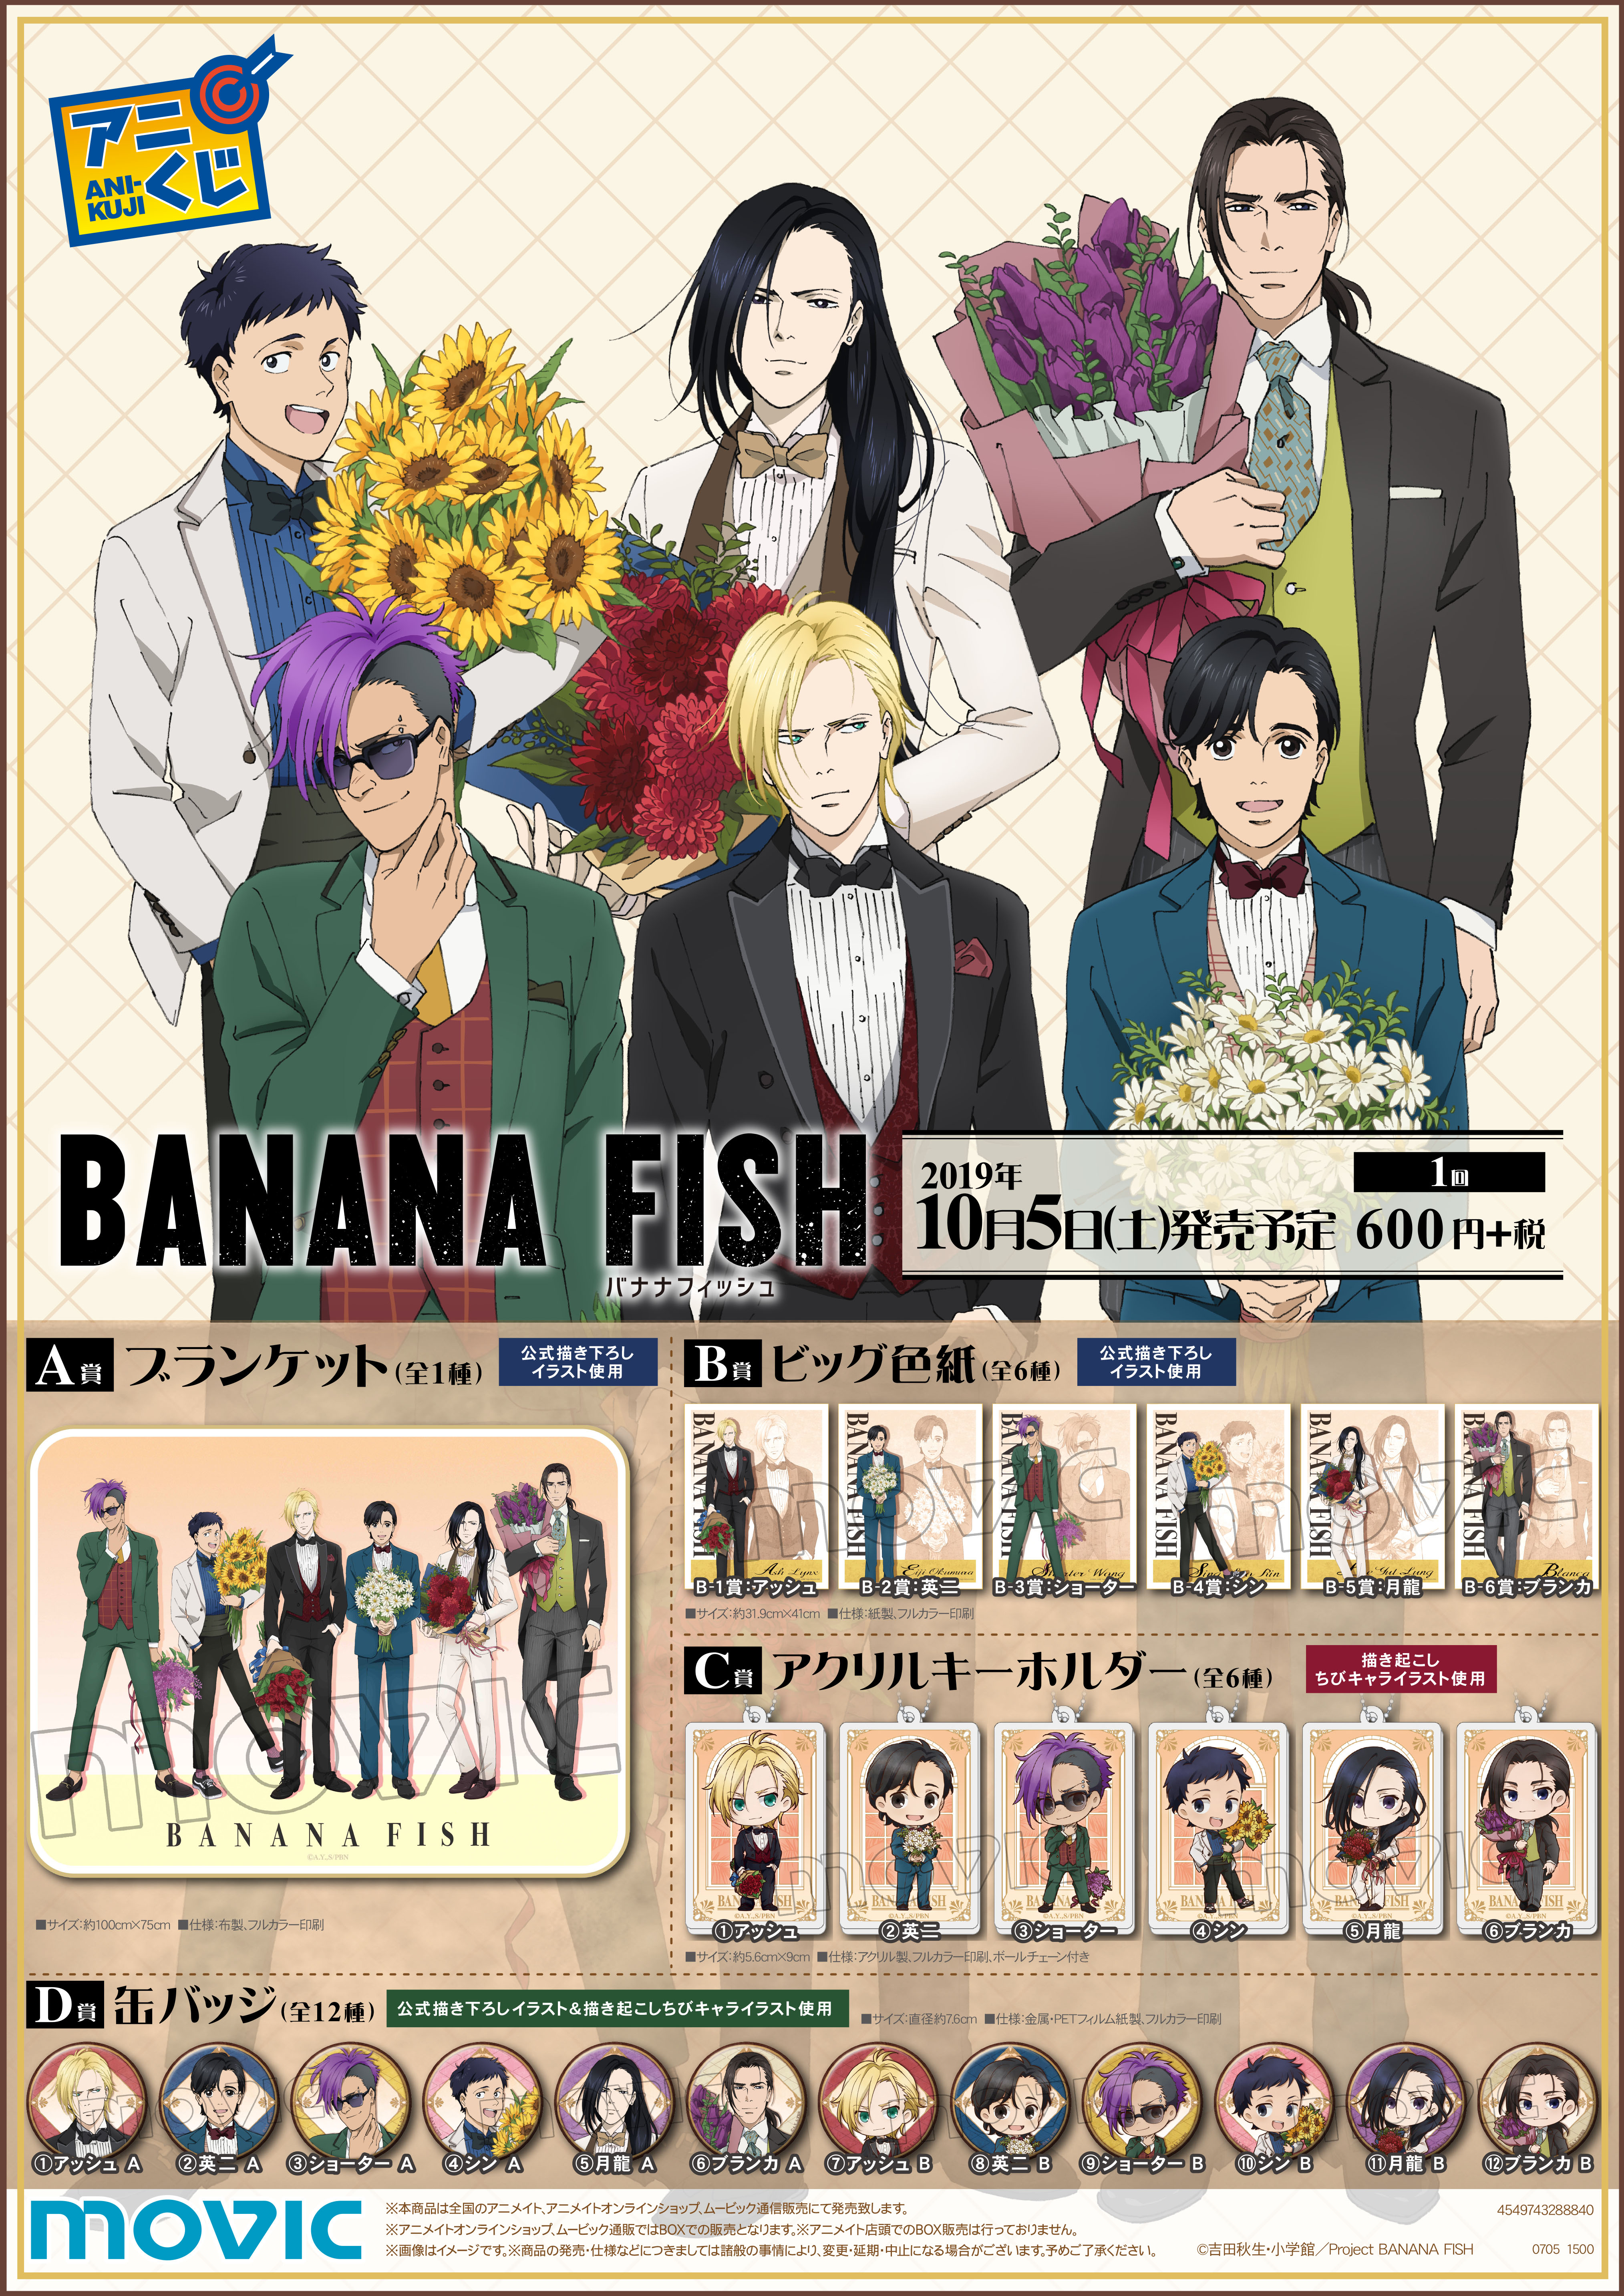 Tvアニメ Banana Fish 放送1周年記念のメモリアル商品が登場 株式